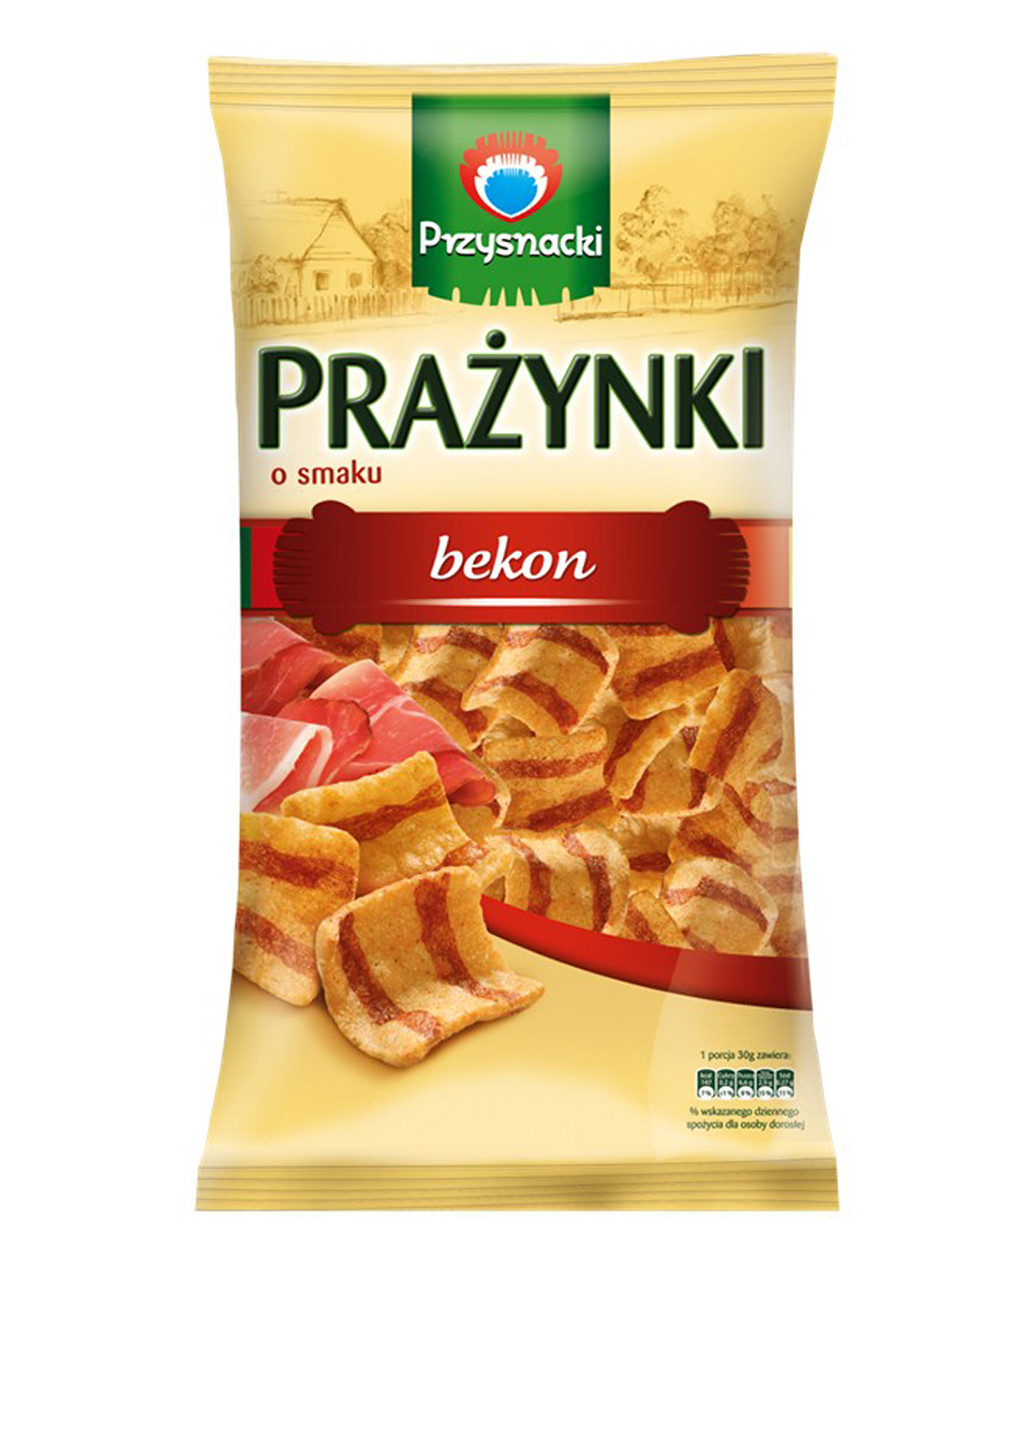 Снеки картофельно-пшеничные со вкусом бекона, 140 г Przysnacki (94992939)